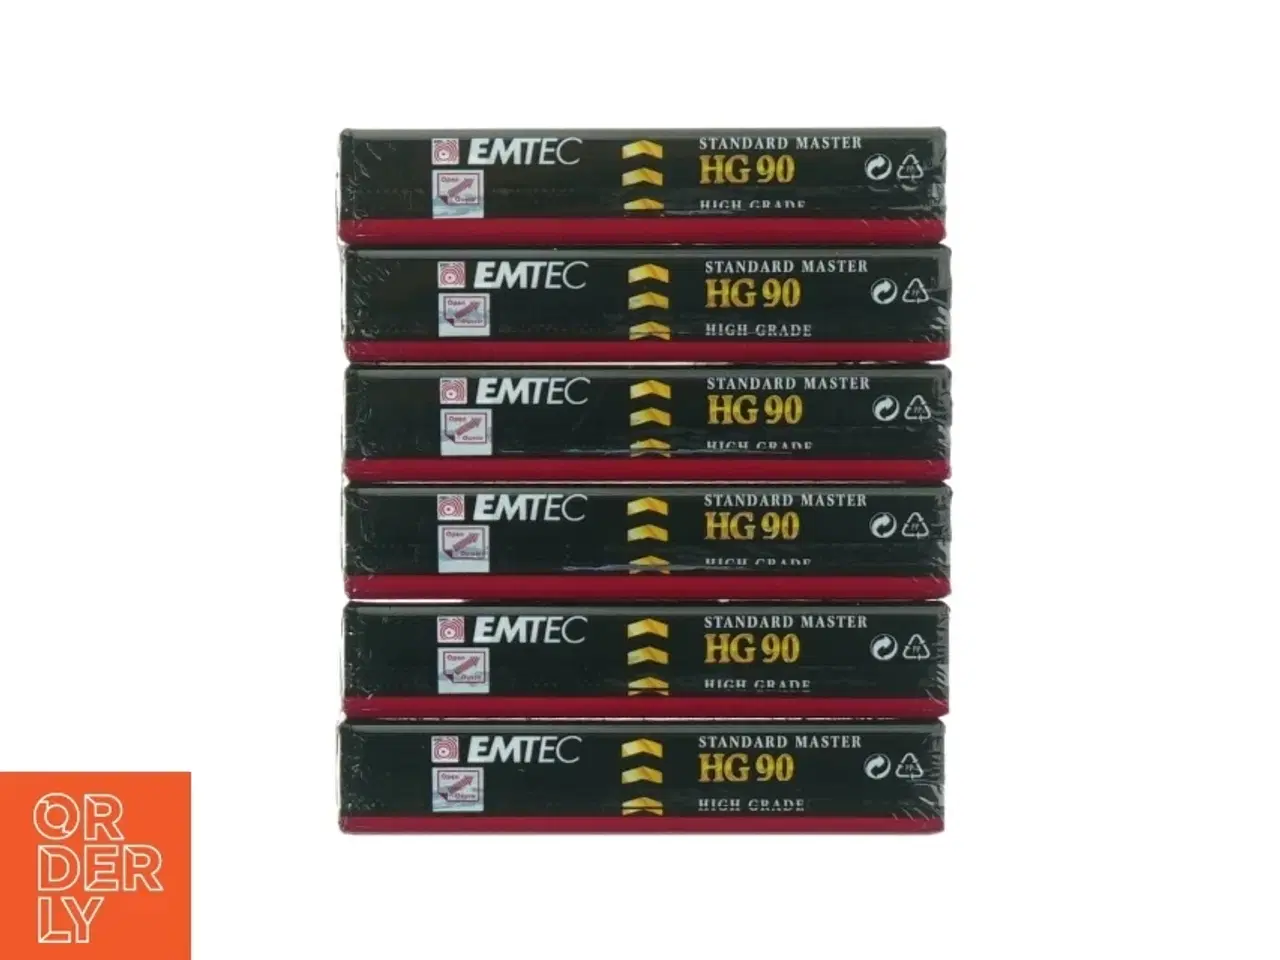 Billede 3 - EMTEC Standard Master HG90 Videobånd fra Emtec (str. Hg 90 8 mm)